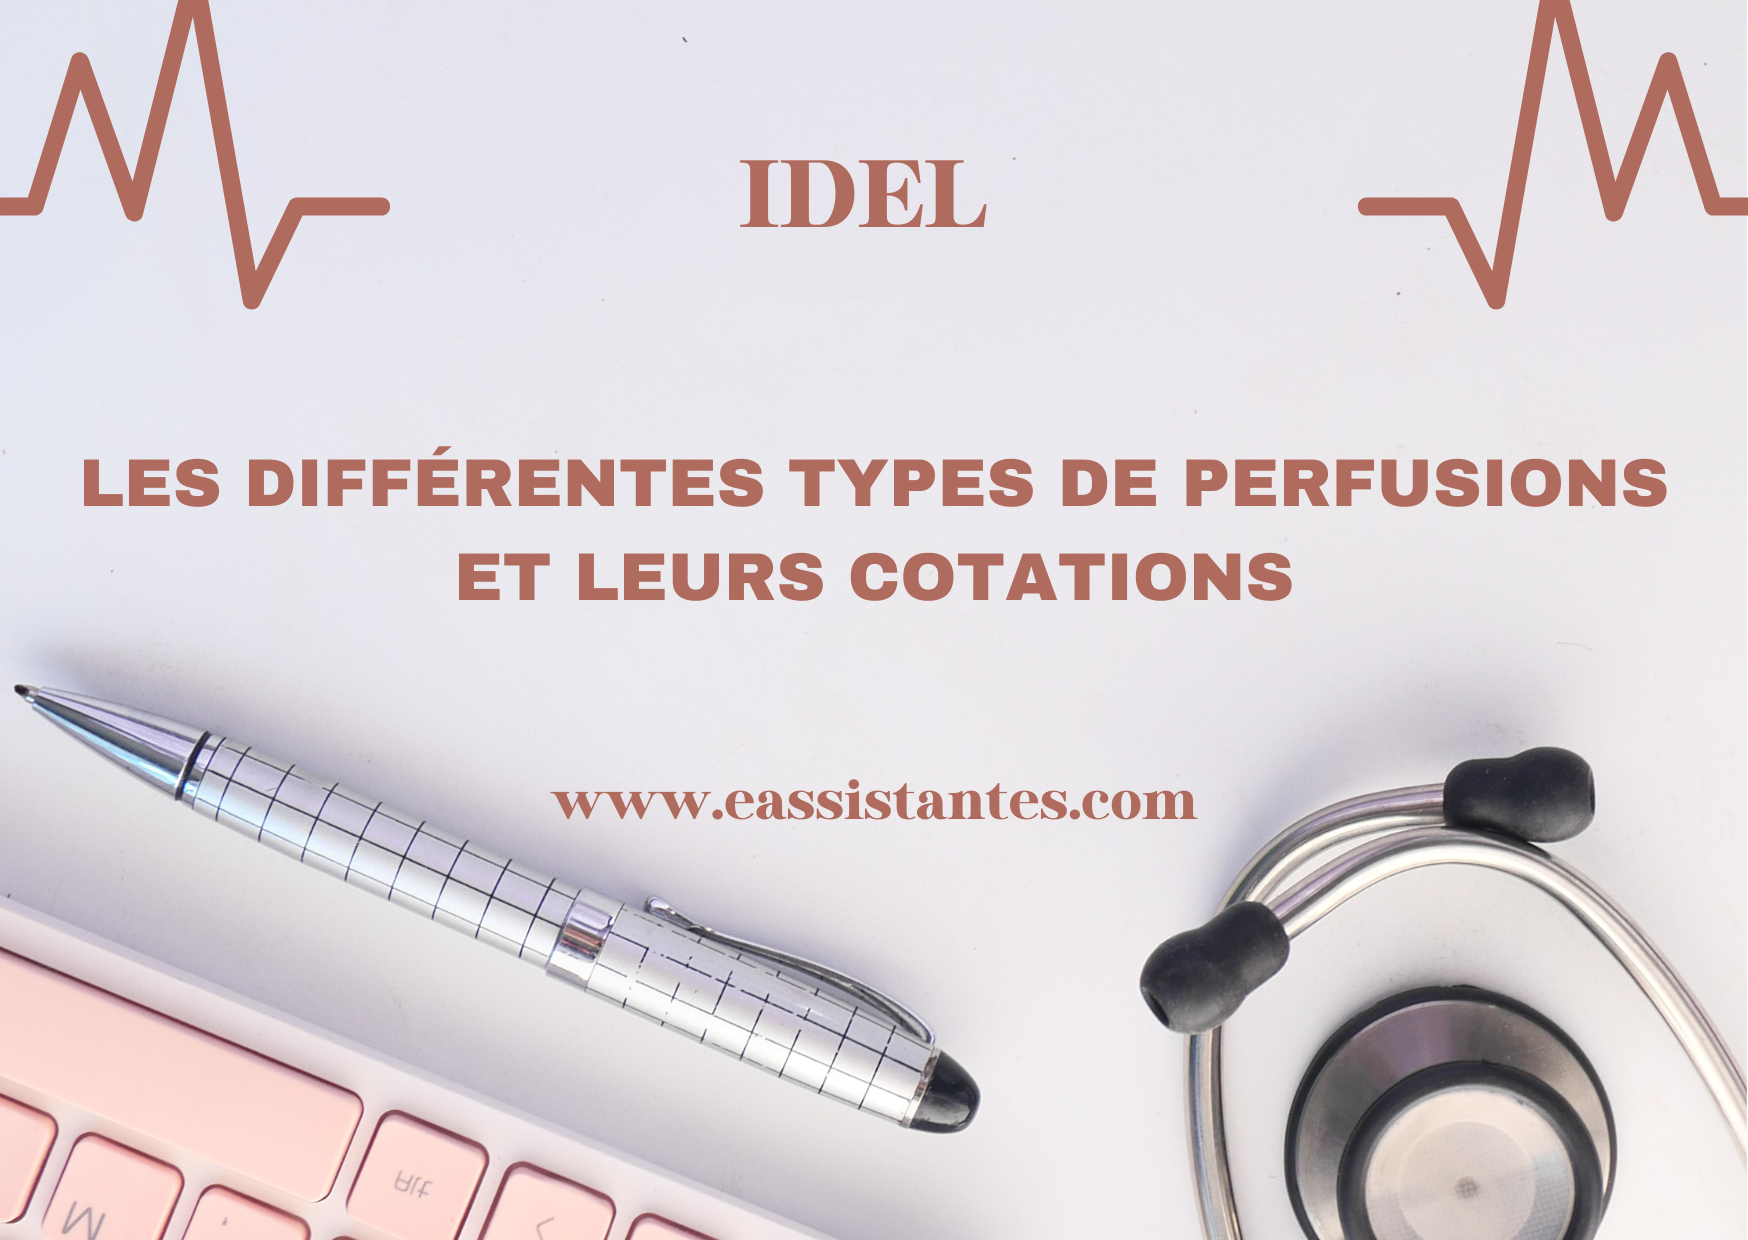 Les différents types de perfusions et leurs cotations pour les IDEL